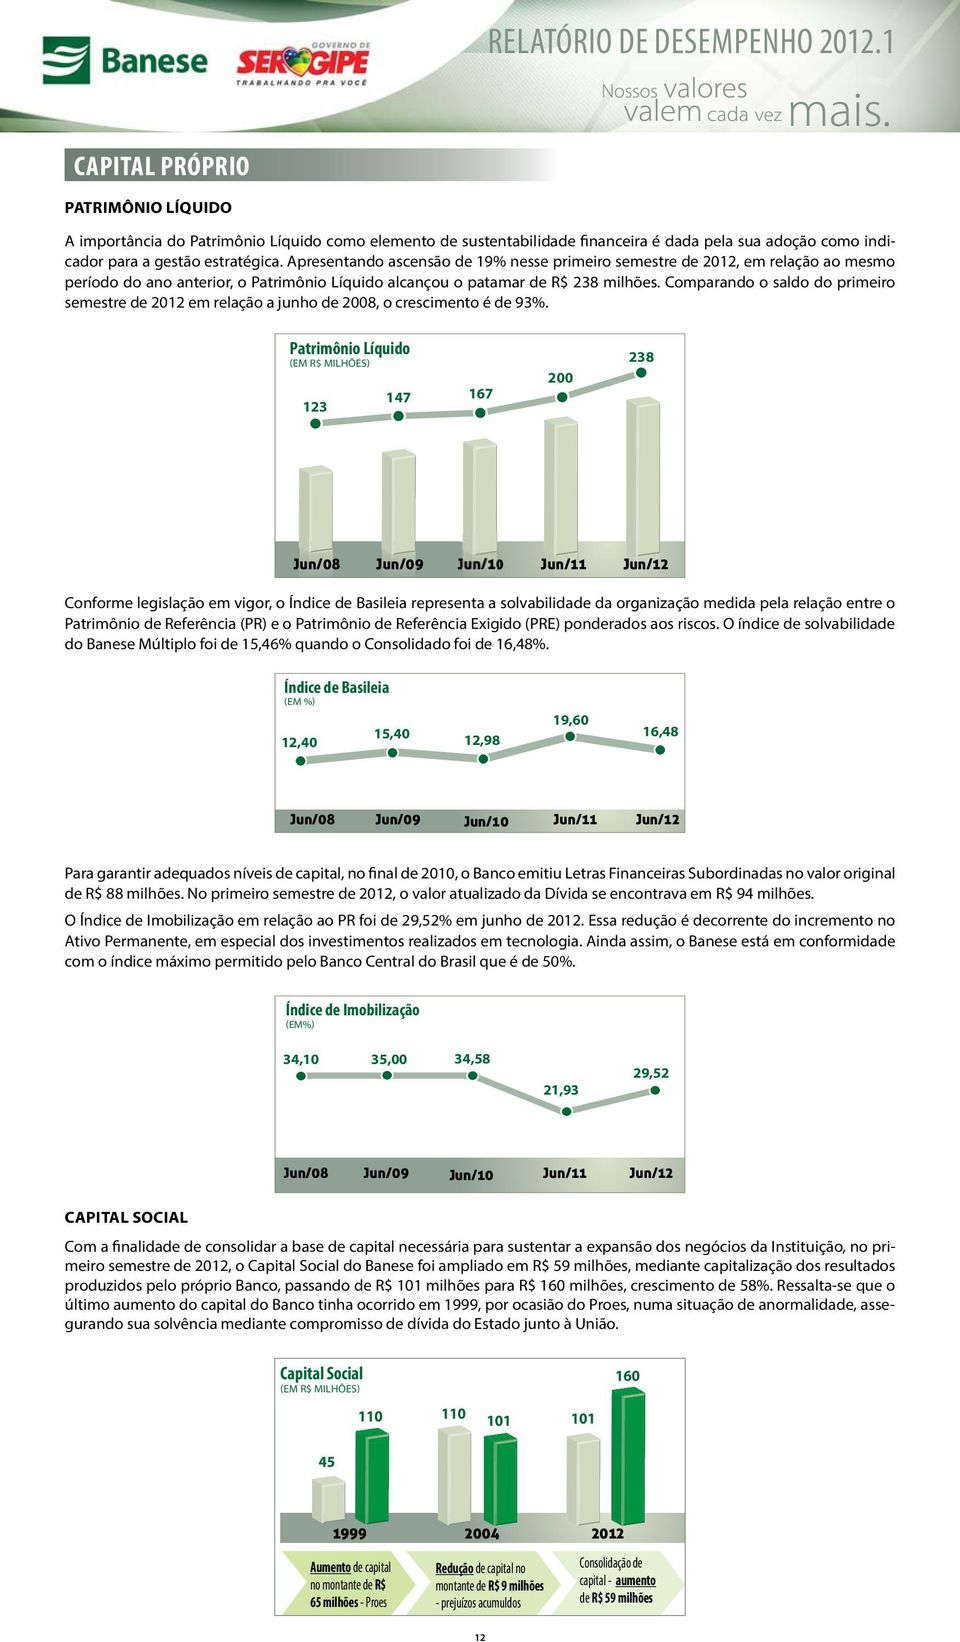 Apresentando ascensão de 19% nesse primeiro semestre de 2012, em relação ao mesmo período do ano anterior, o Patrimônio Líquido alcançou o patamar de R$ 238 milhões.